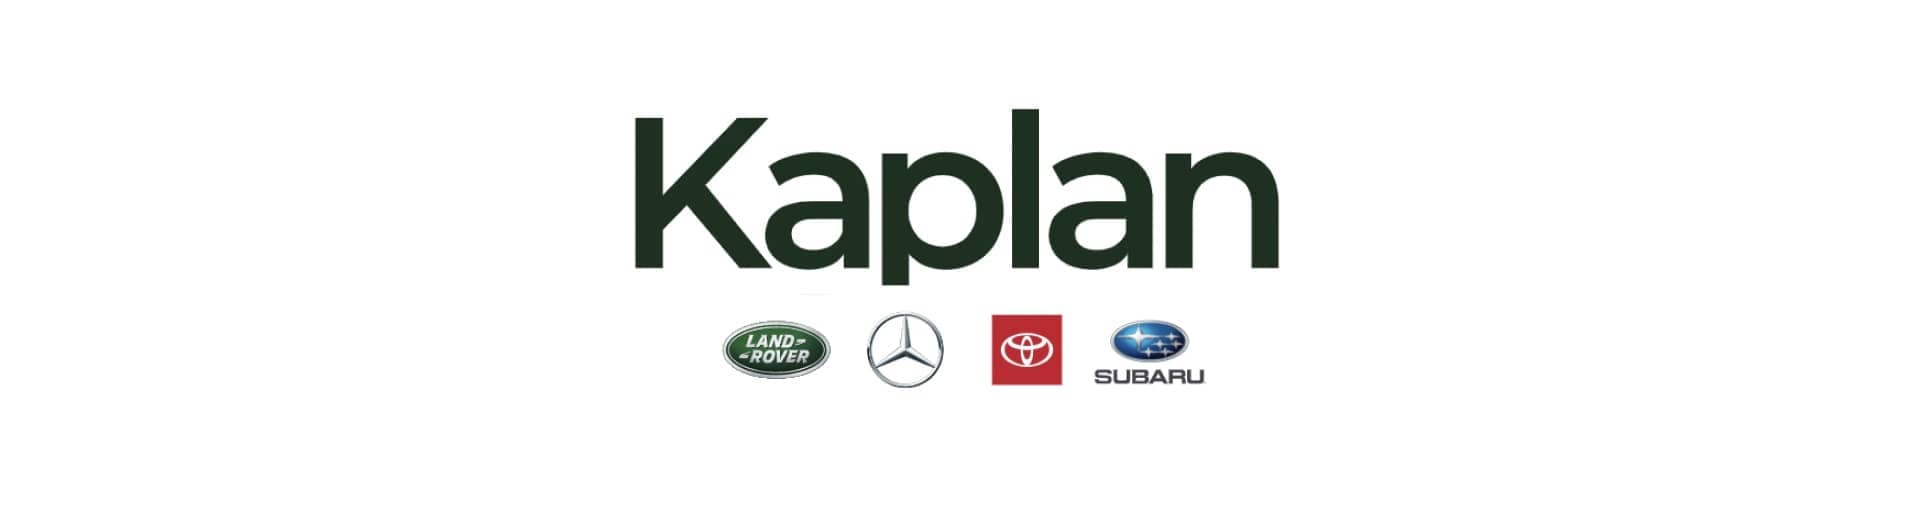 kaplan logo with oem logos